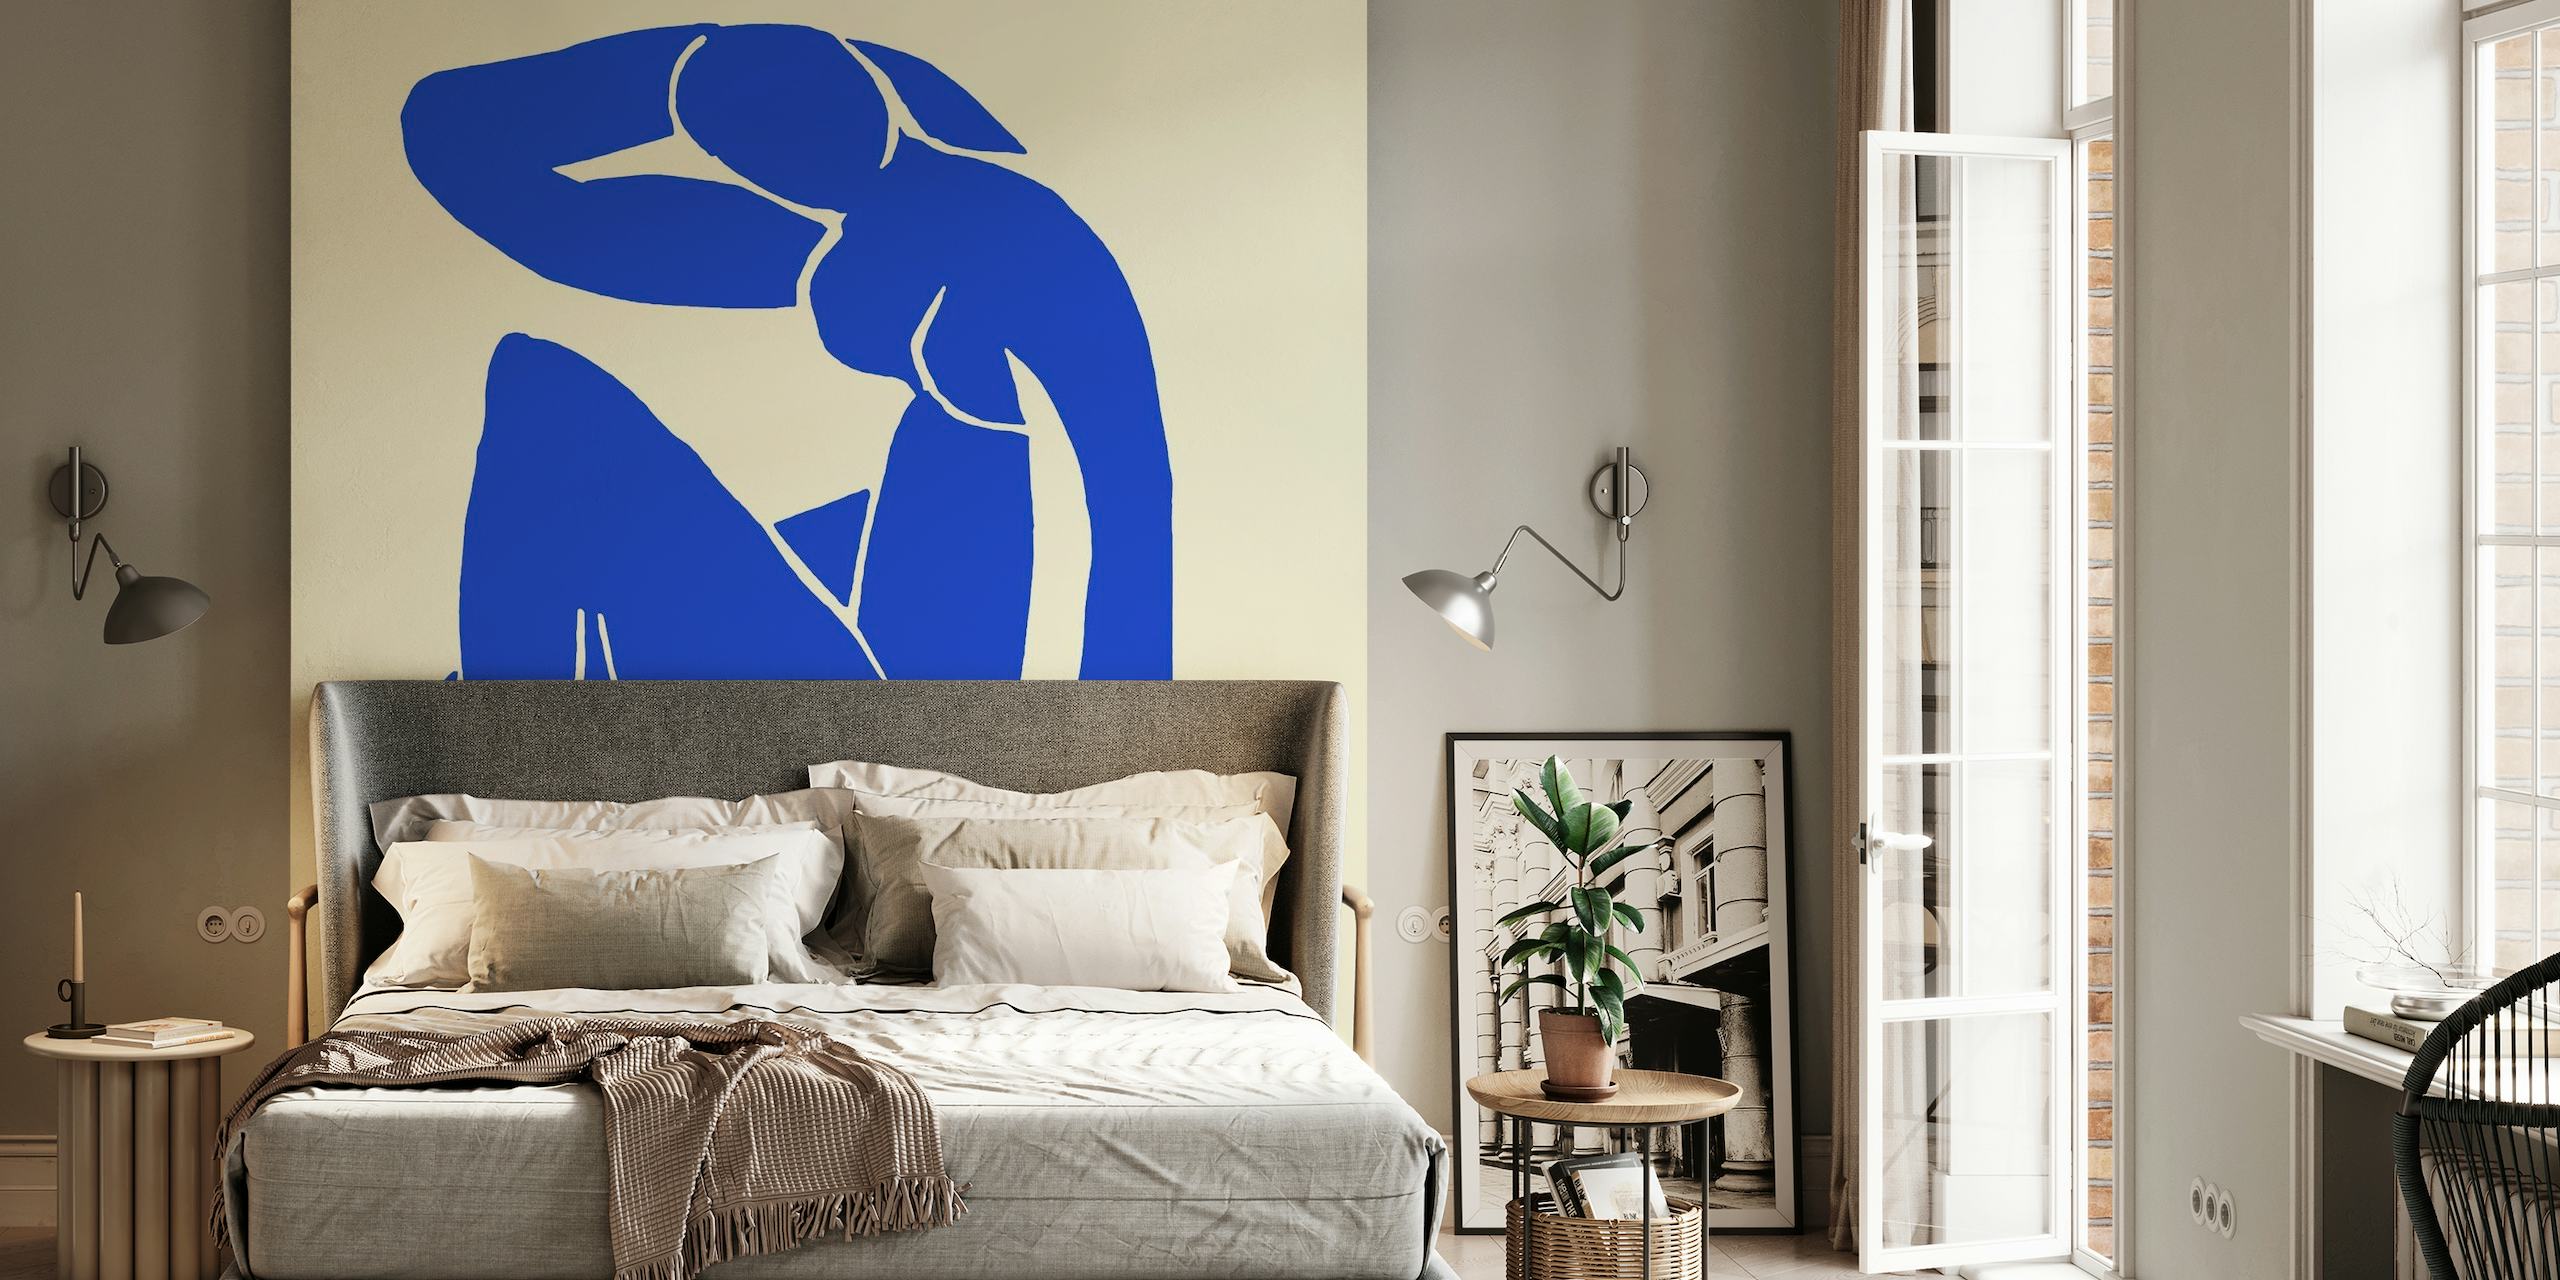 Peinture murale abstraite à figures bleues inspirée du style artistique de Matisse